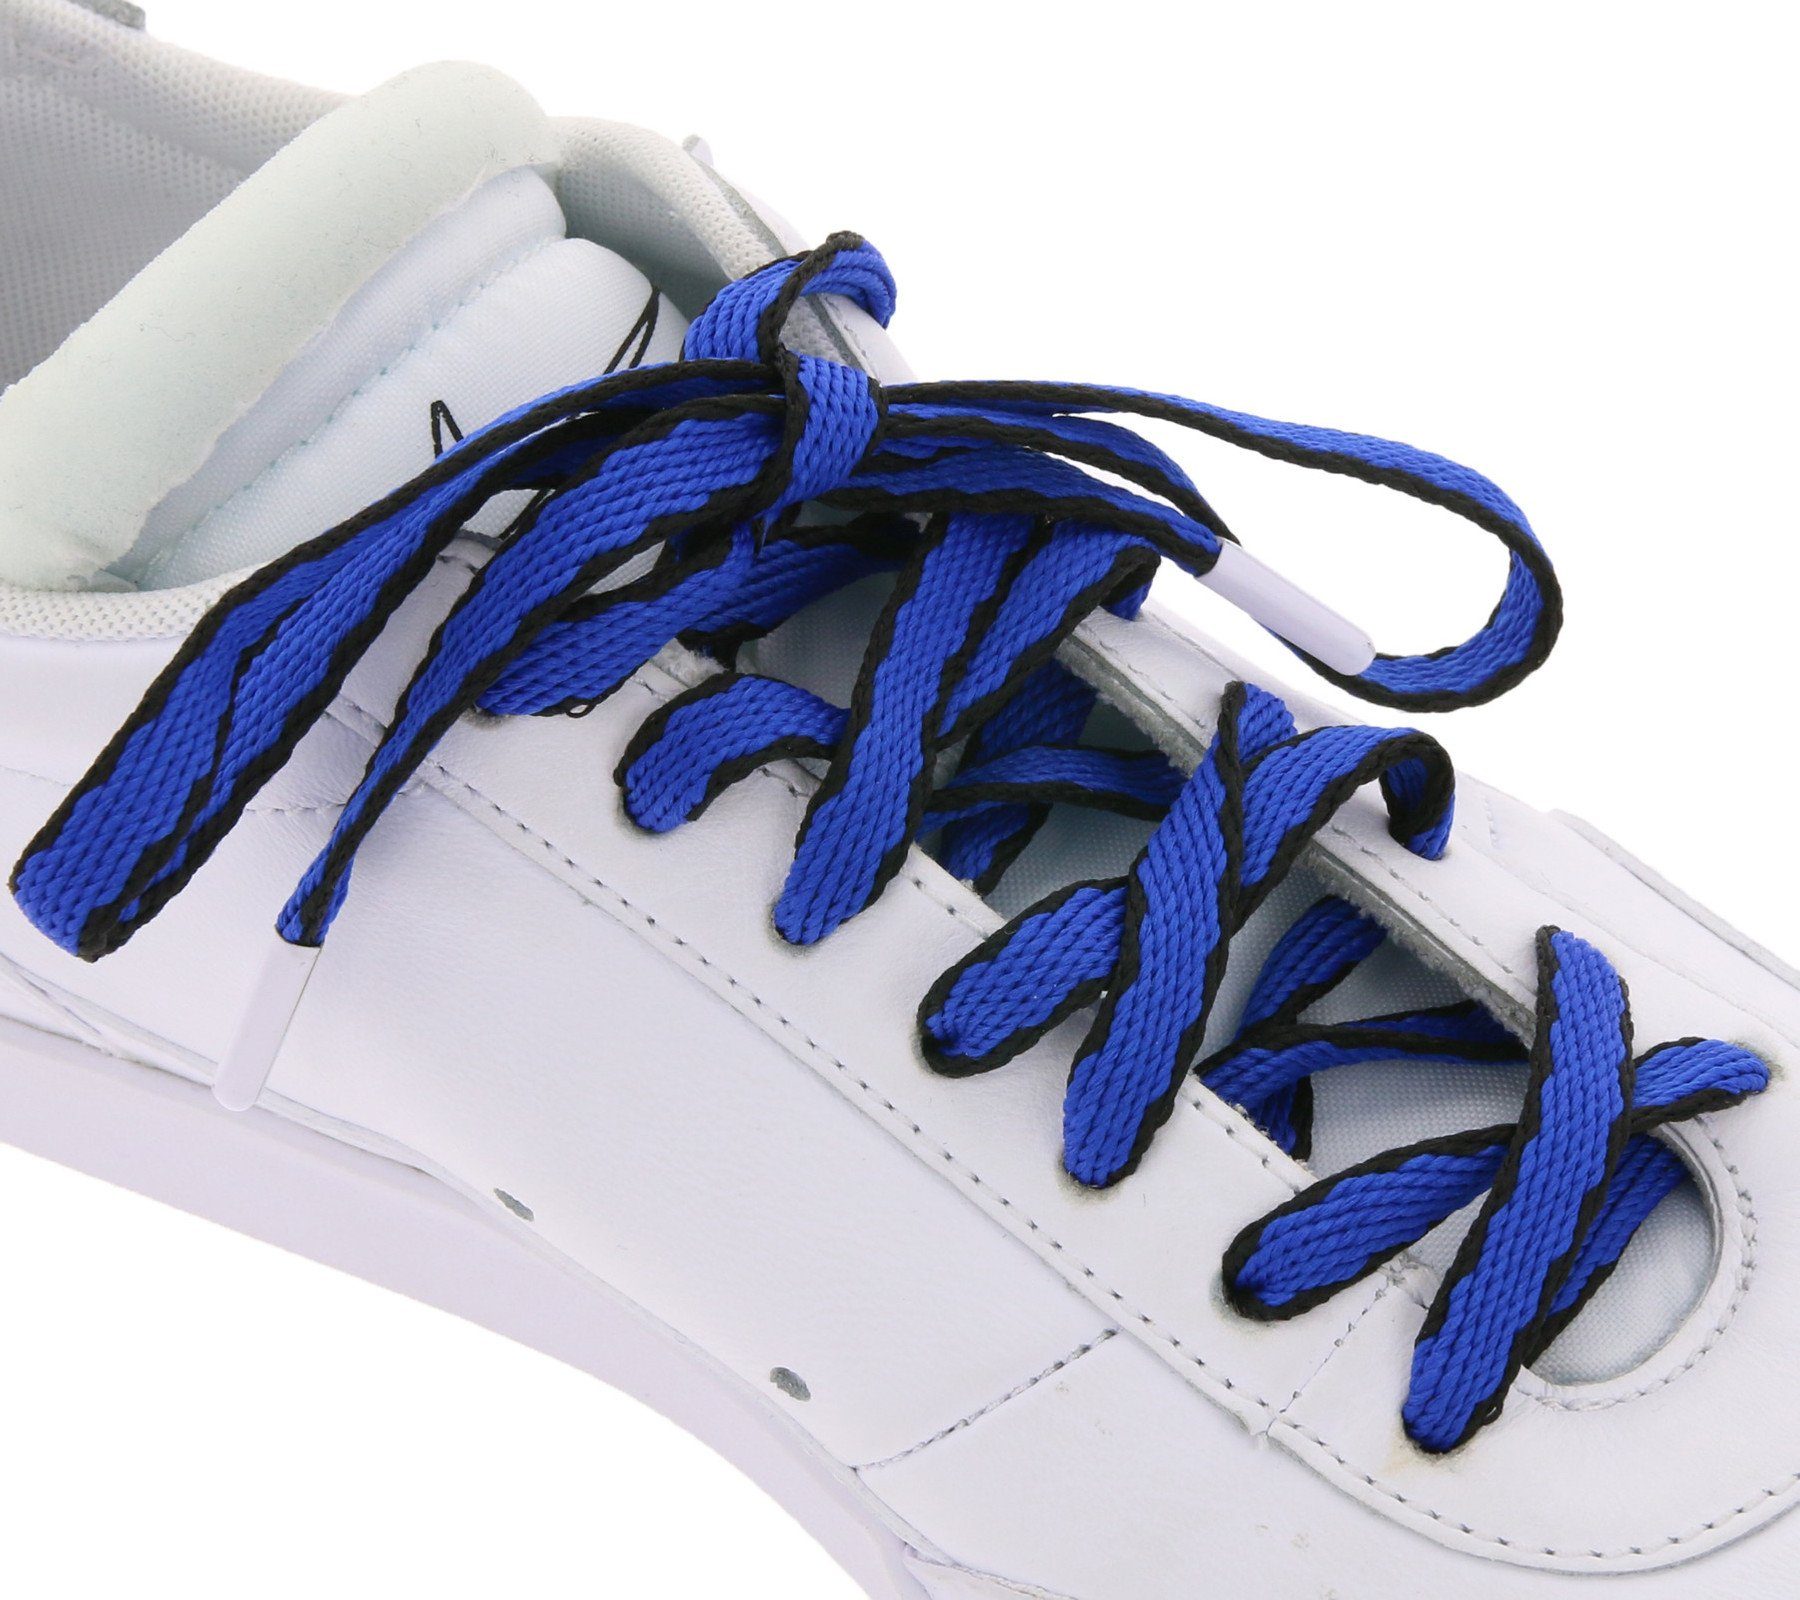 Tubelaces Schnürsenkel TubeLaces Schuhe Schuhbänder auffällige Schnürsenkel Schnürbänder Royal Blau/Schwarz